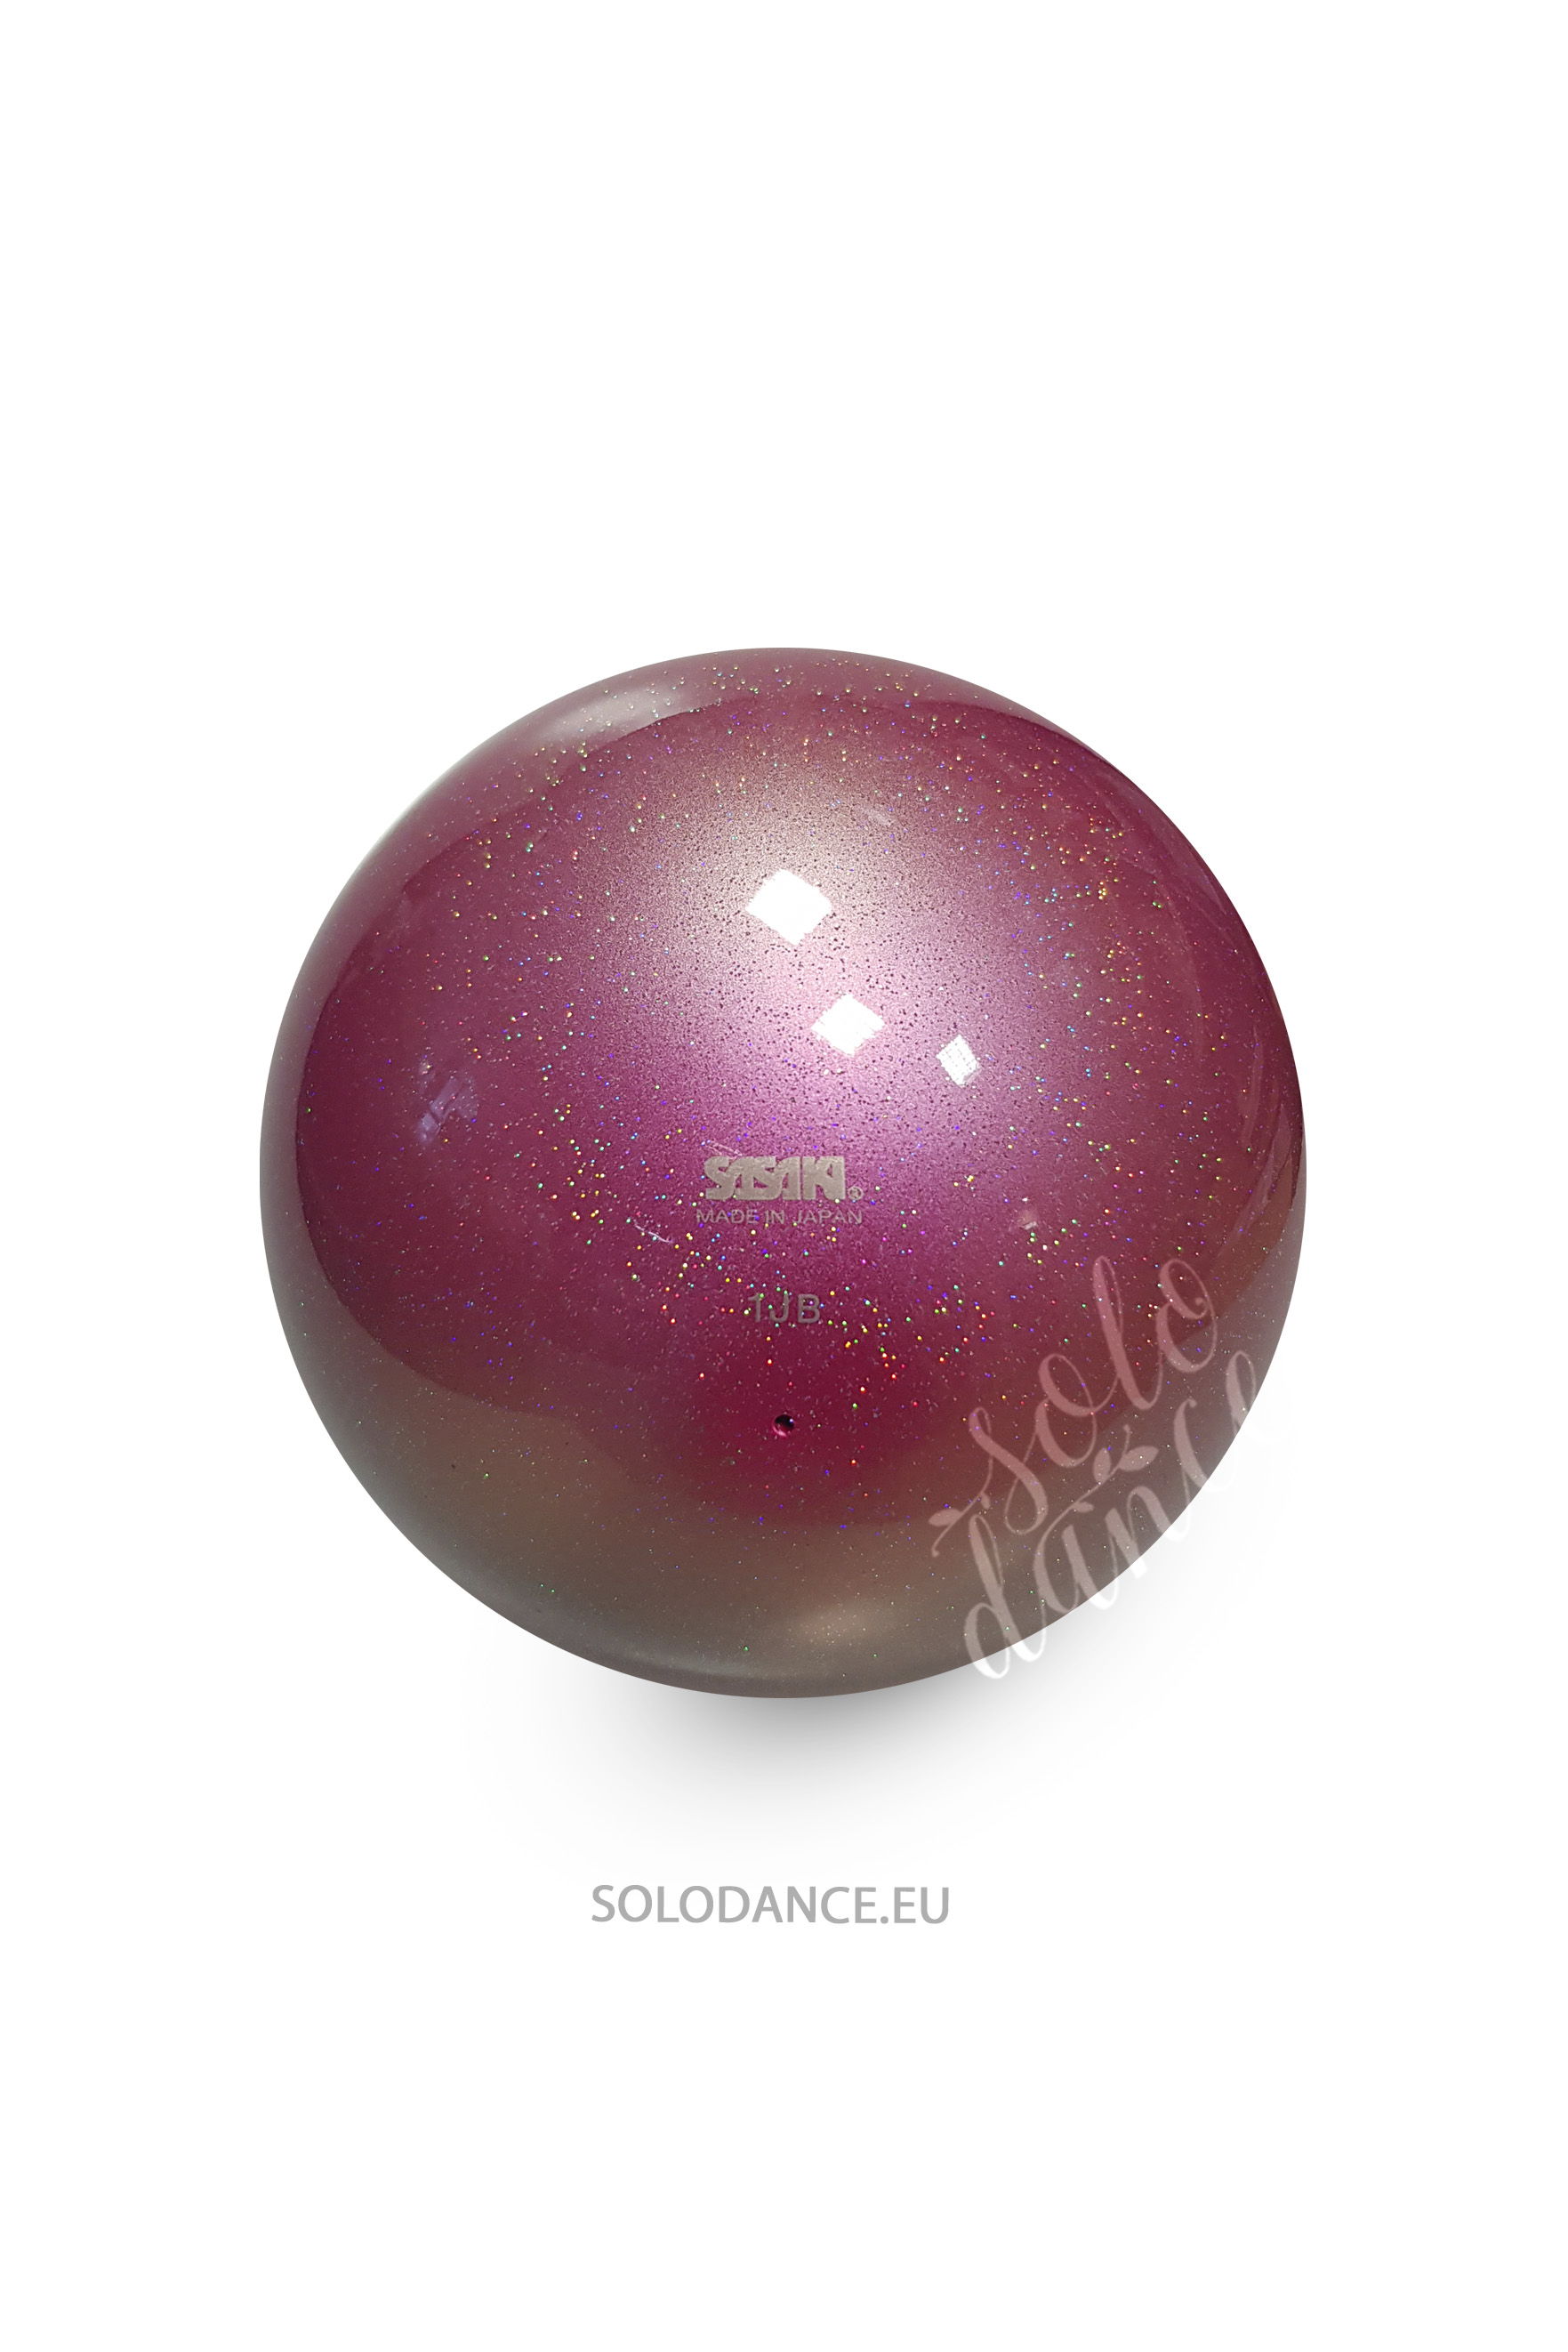 Rhythmic gymnastics ball Sasaki AURORA M-207MAU 17 cm FRRO (FRENCH ROSE)